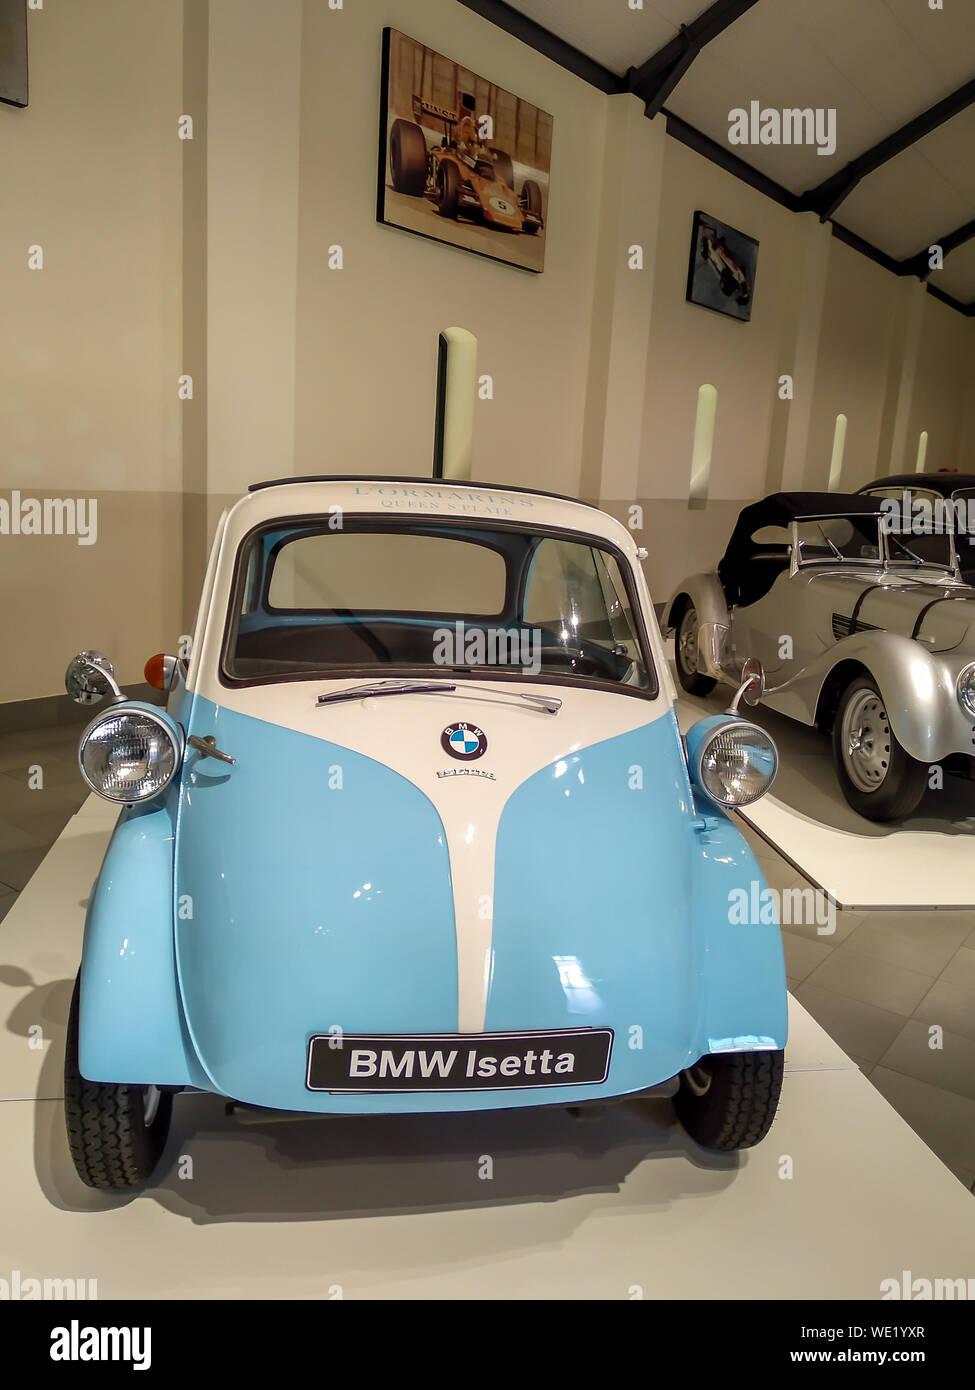 FRANSCHHOEK, Westkap, Südafrika - 16. Dezember 2018: Bild von Franschhoek Motor Museum Innenraum eine Vintage BMW Isetta Fahrzeug auf Display Stockfoto